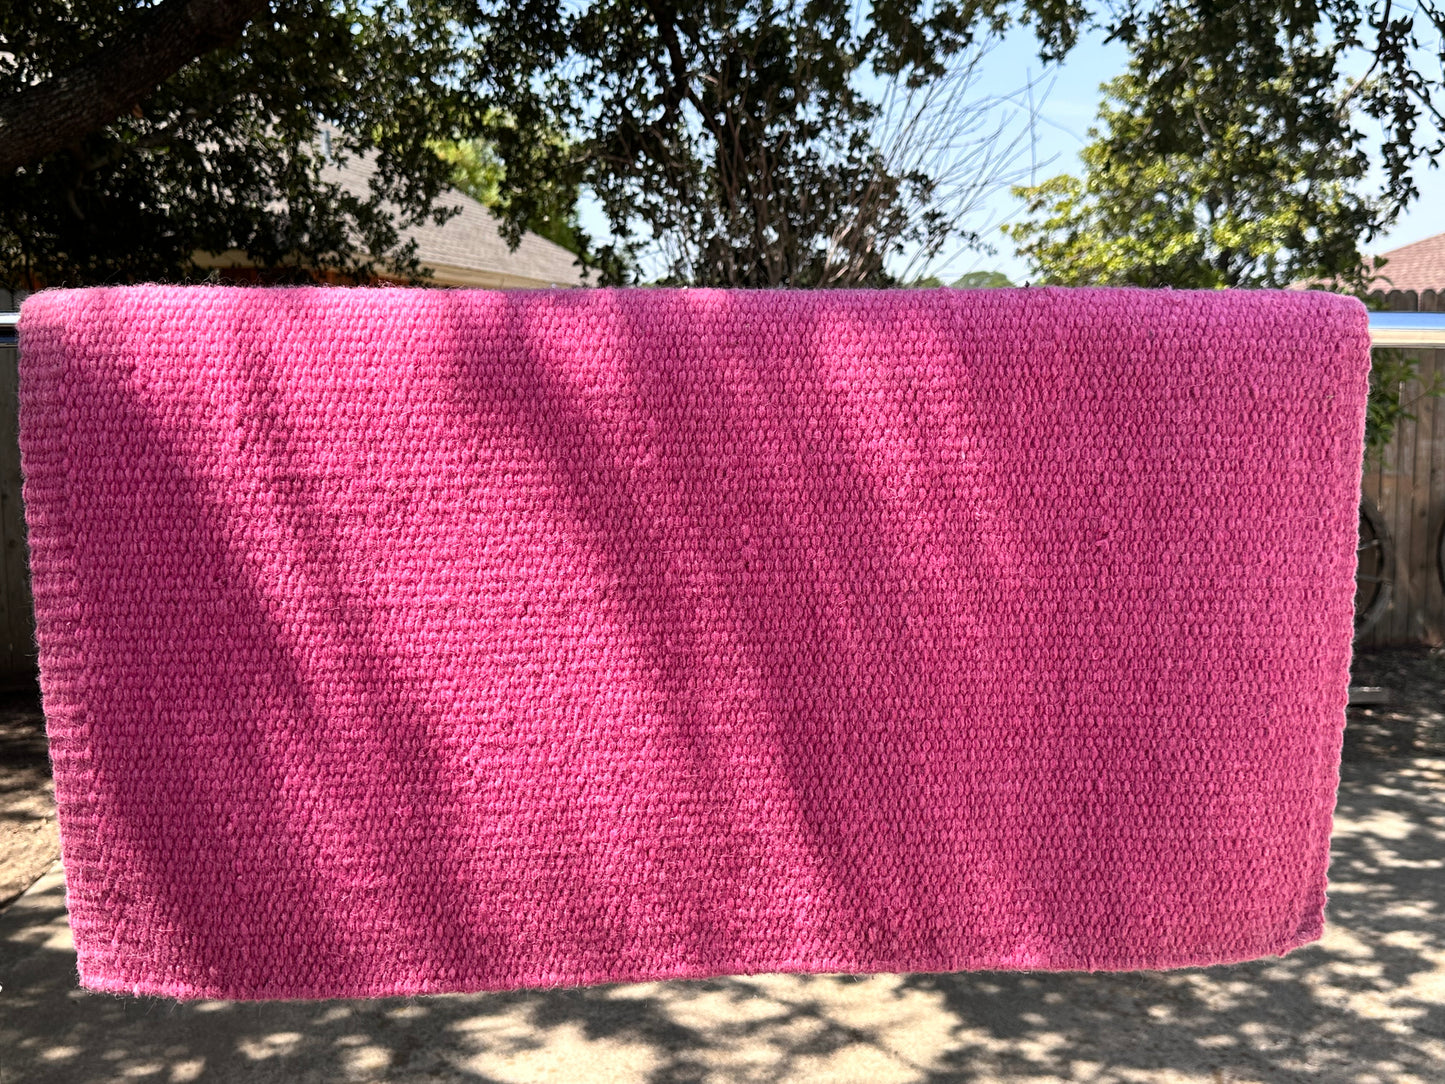 Solid saddle blanket. Sachet pink